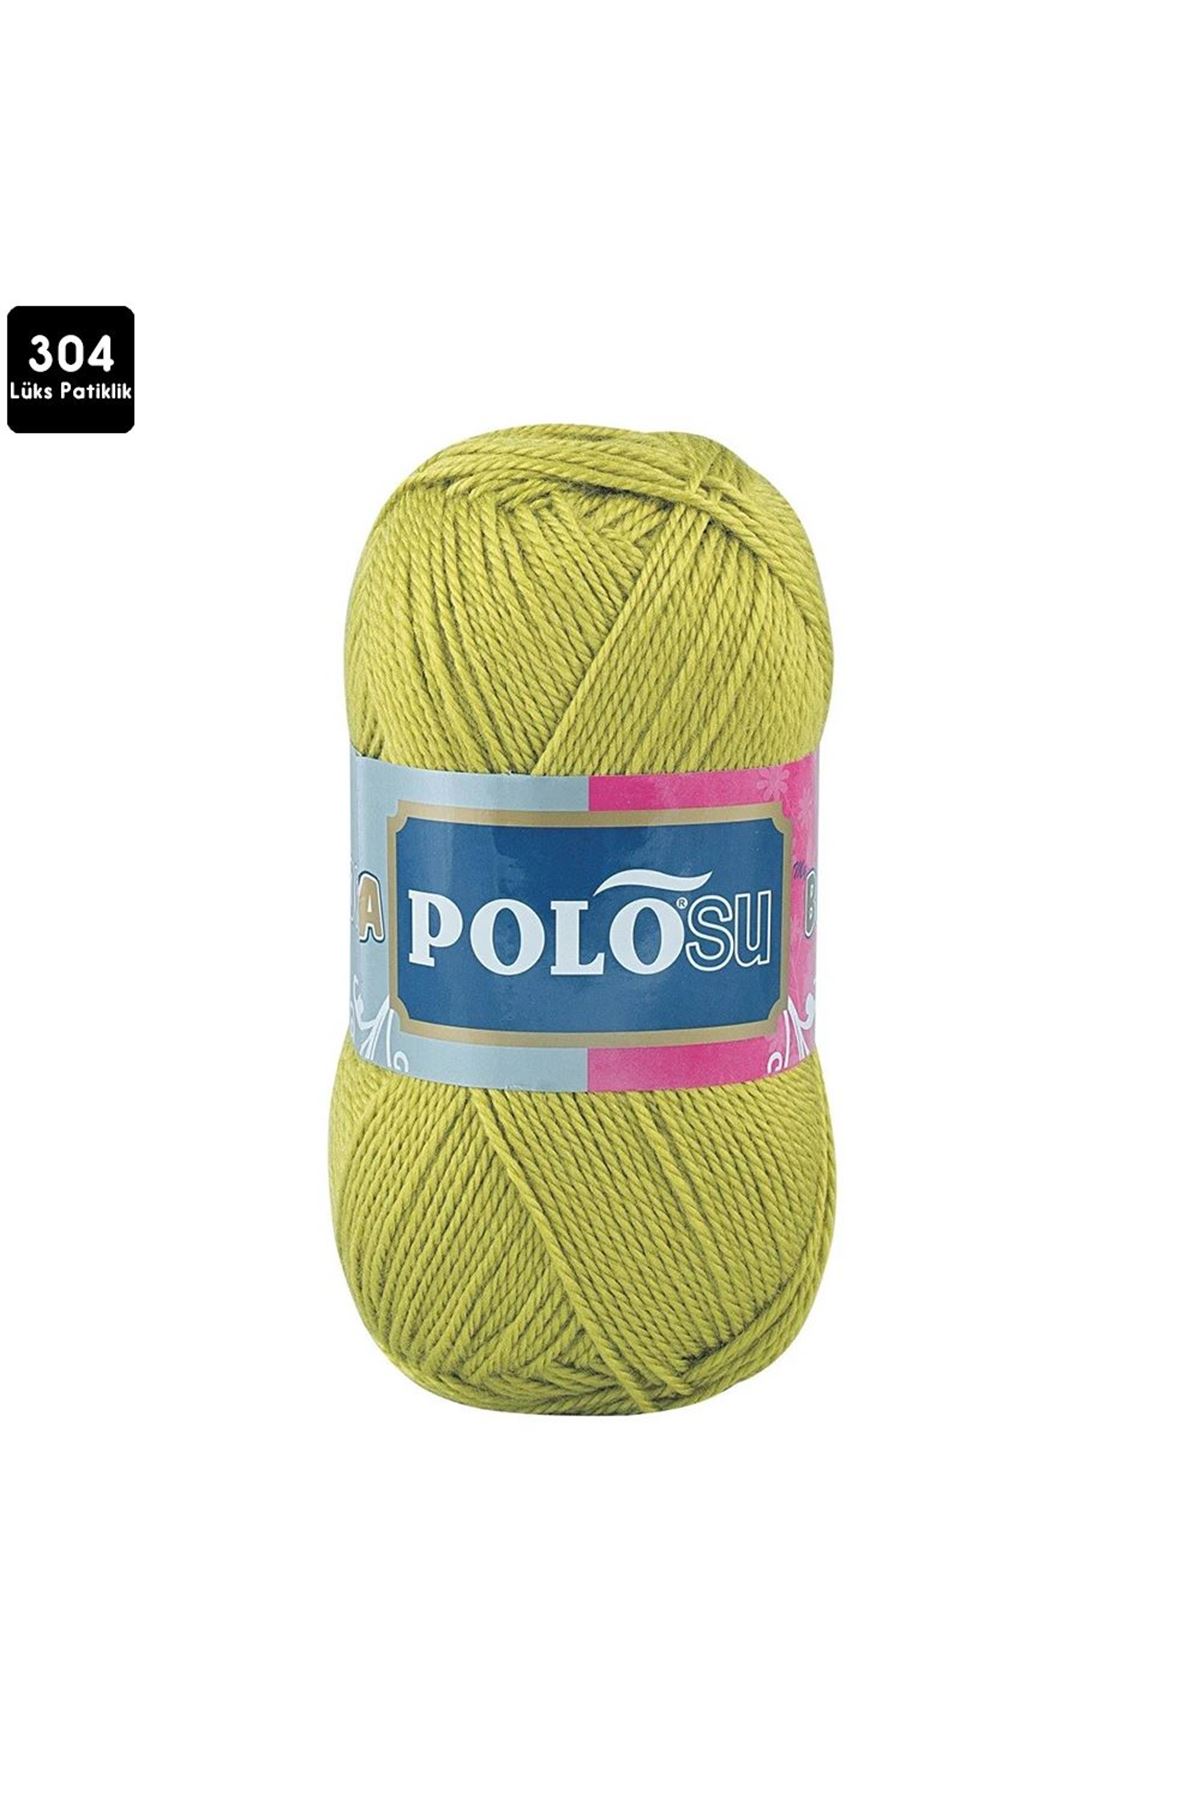 PoloSU Lüks Patiklik Renk No:304